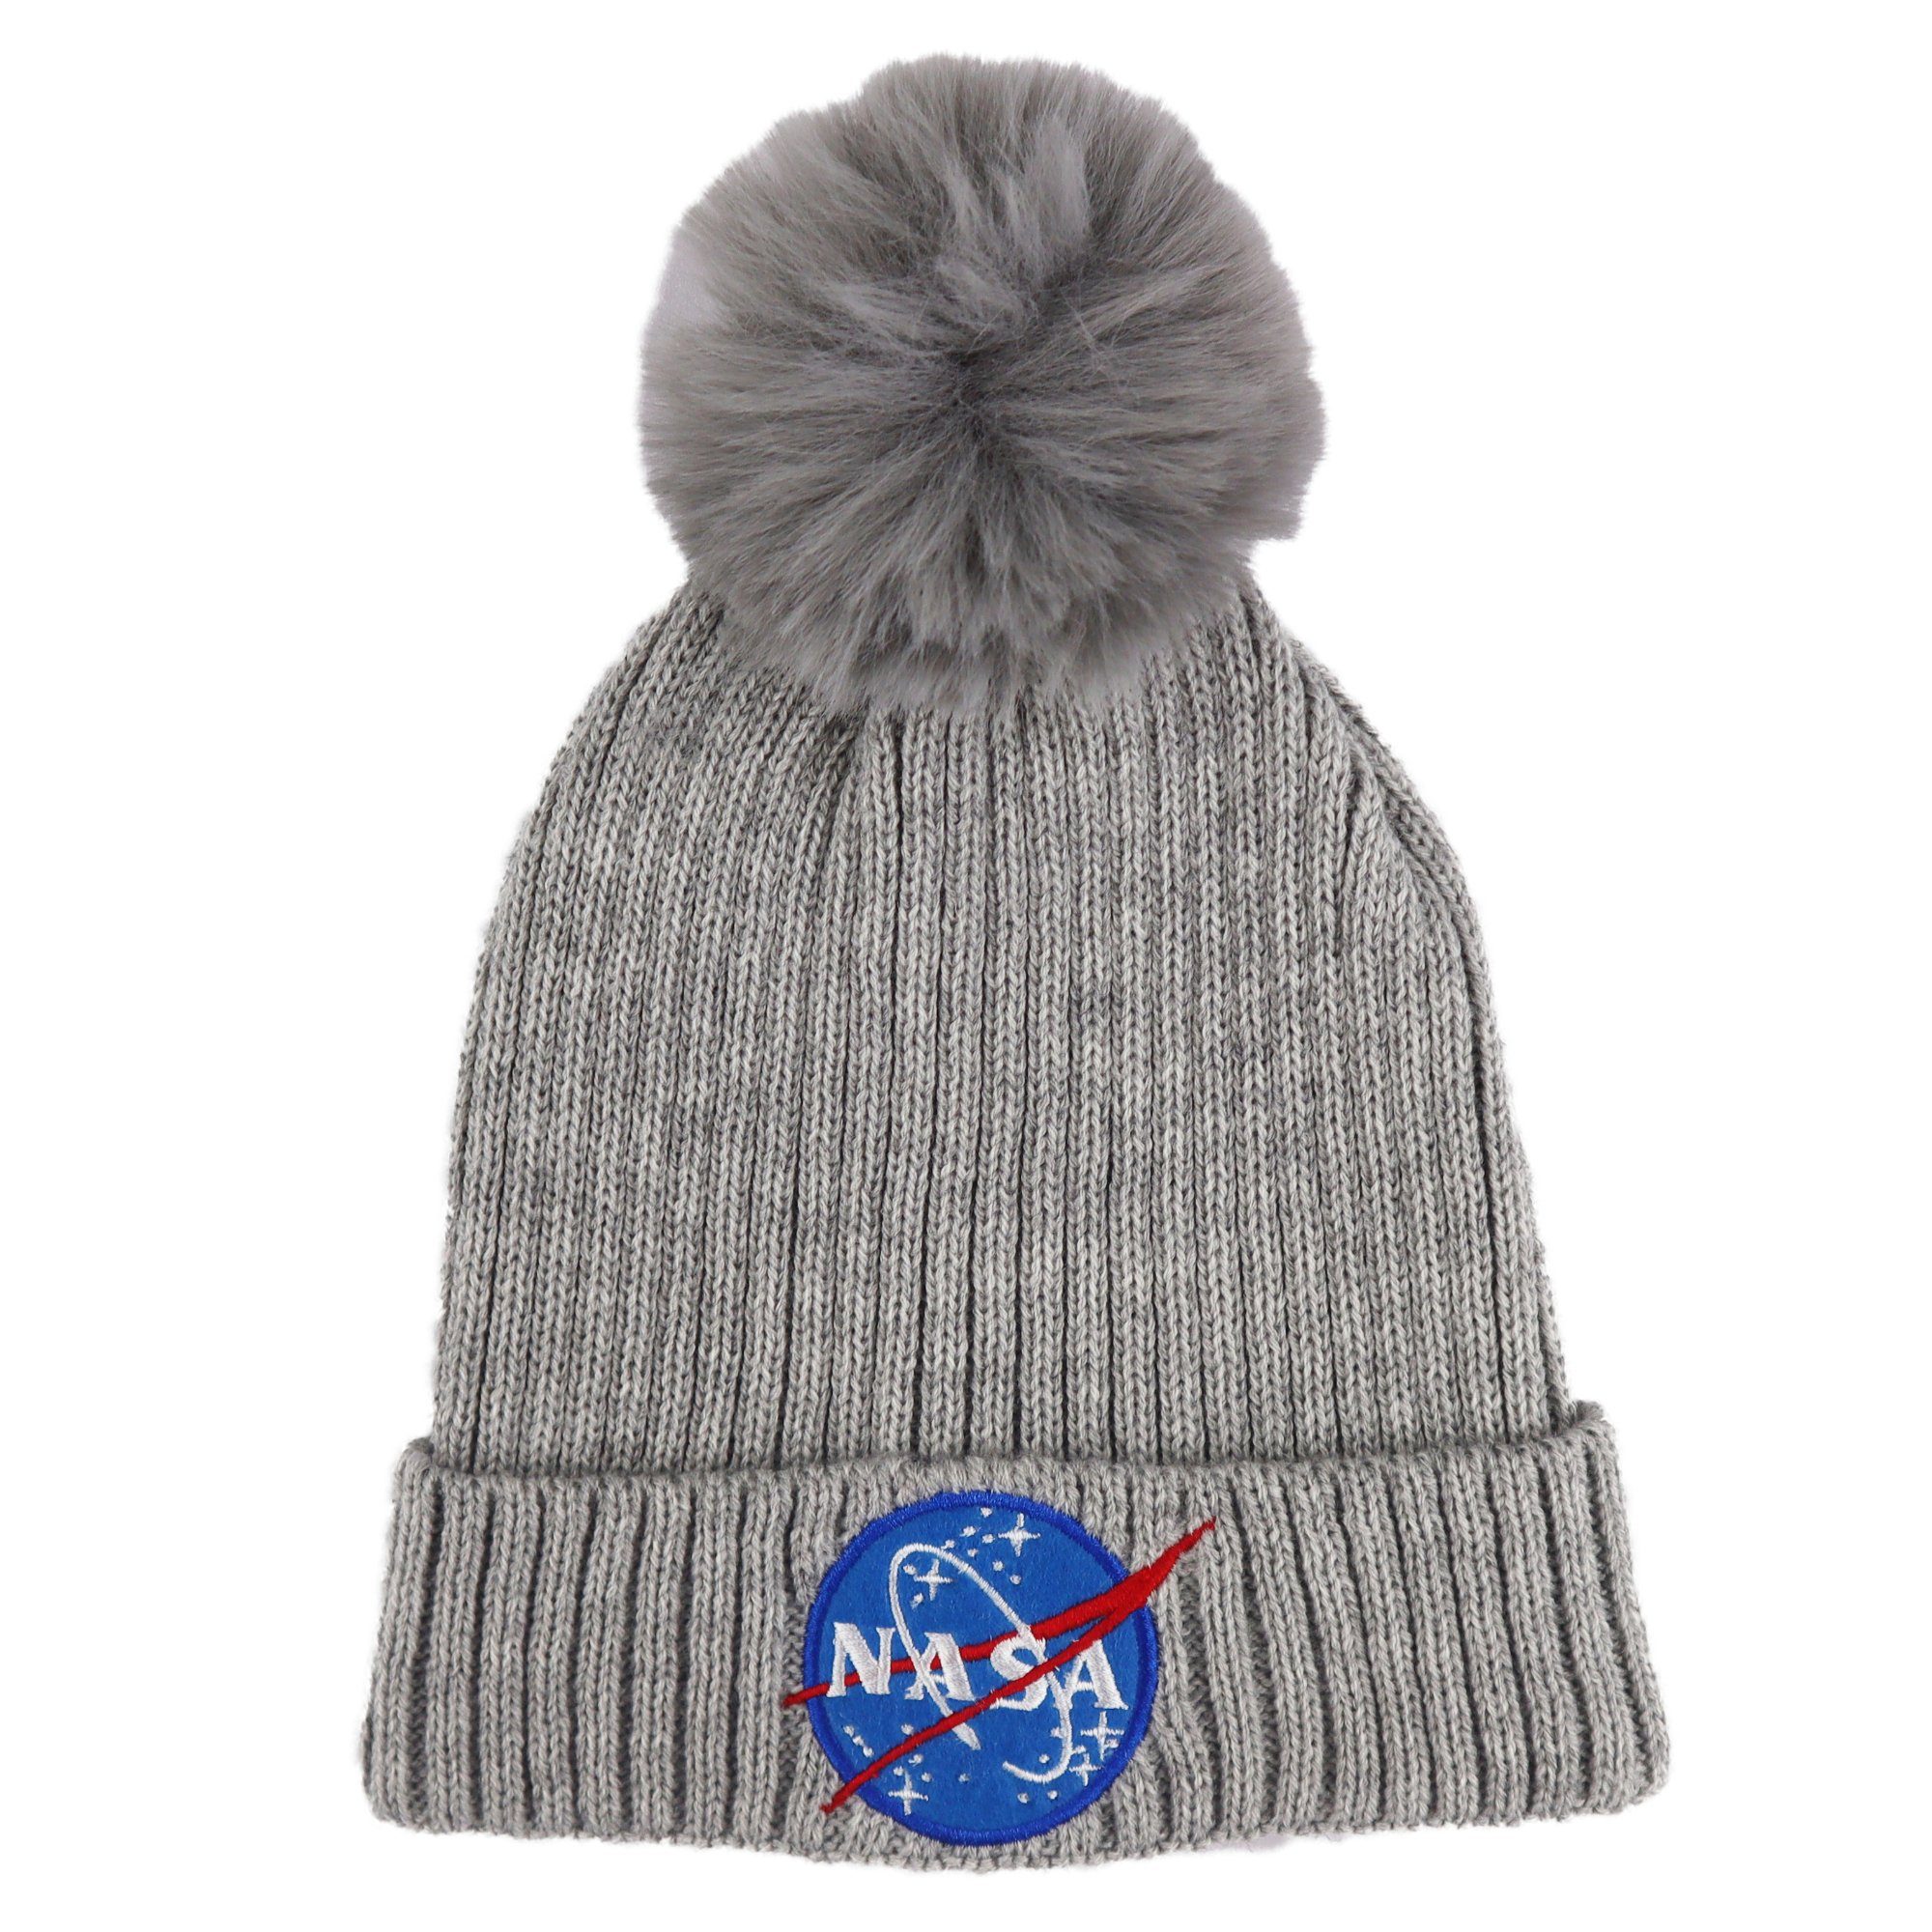 NASA Bommelmütze NASA Space Center - Mädchen Damen Herbst Wintermütze Bommelmütze Gr. 54 bis 56